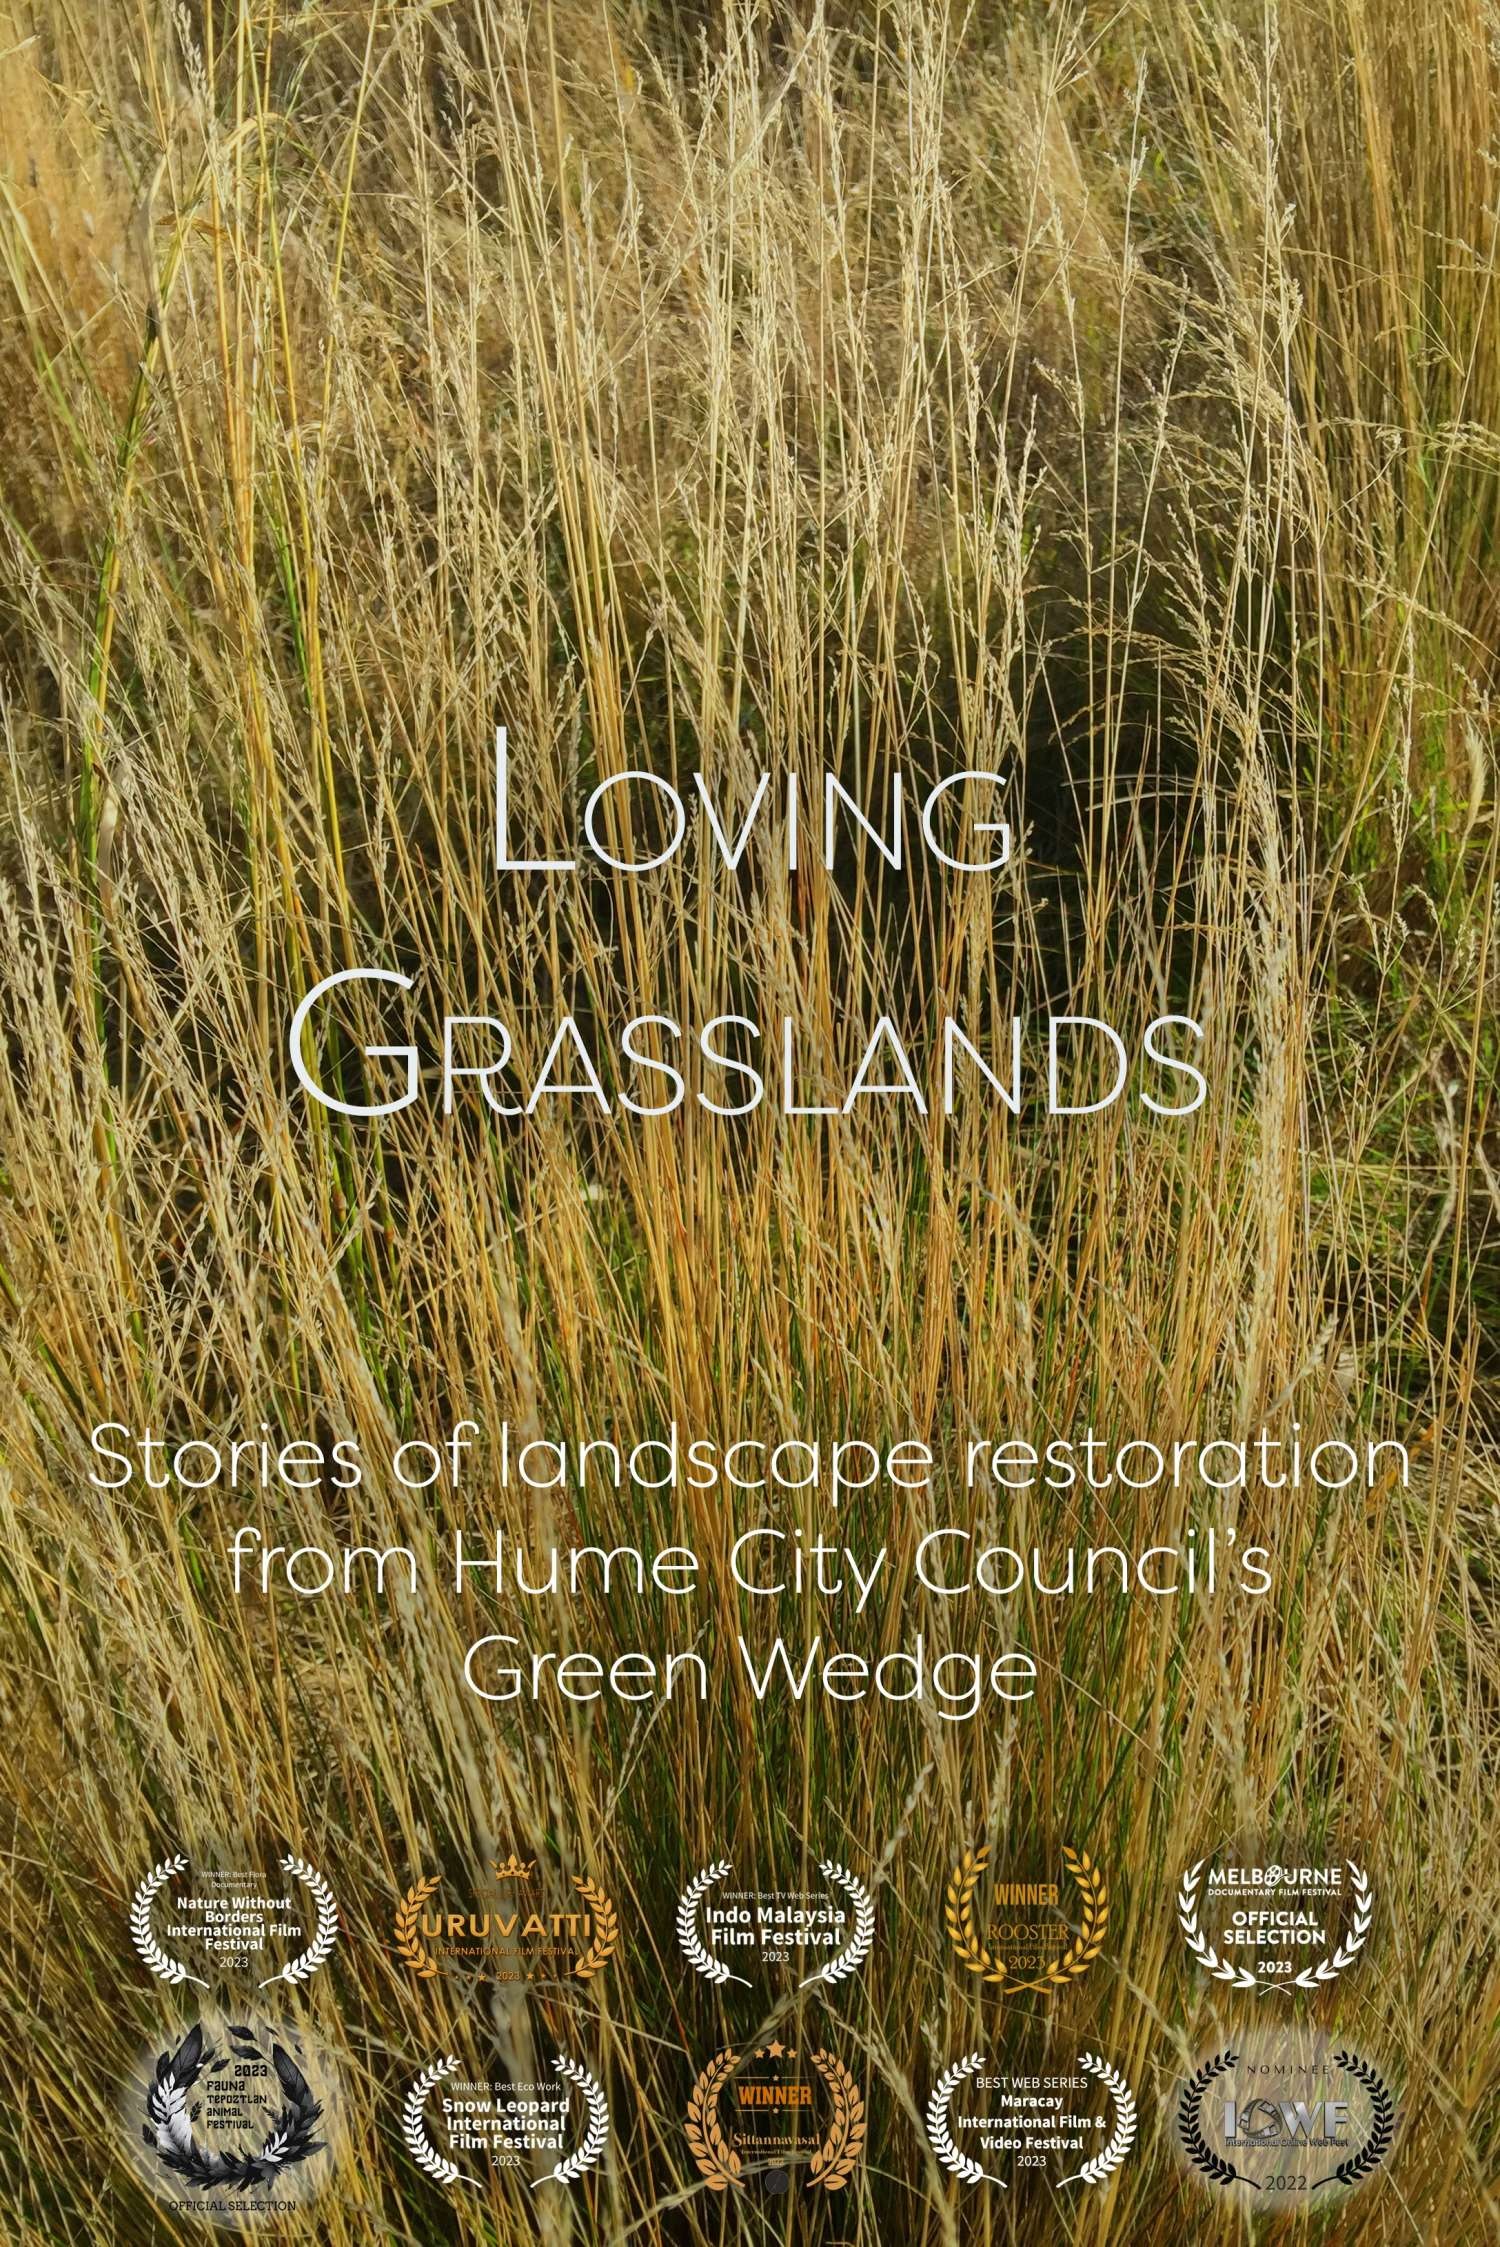 Loving Grasslands